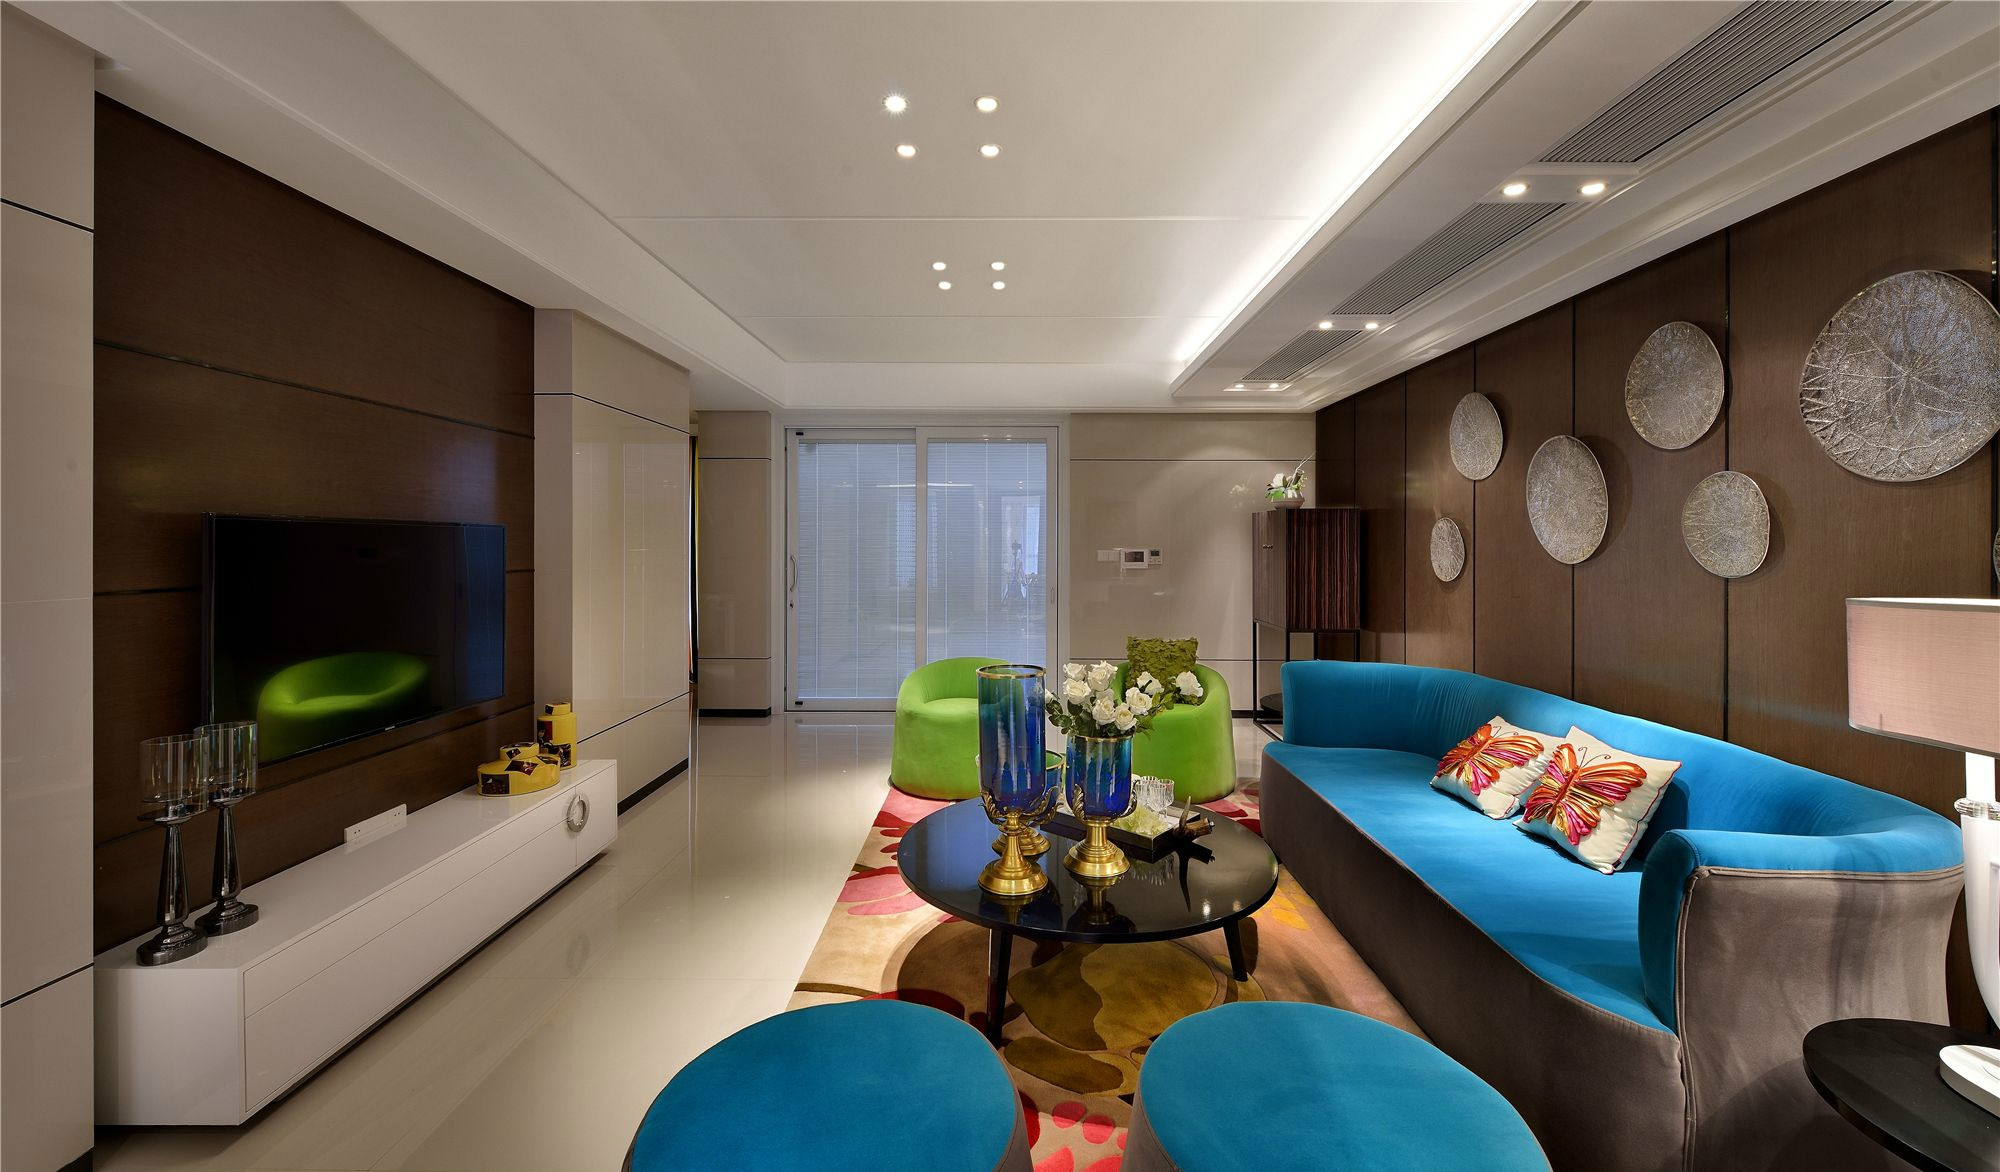 客厅装饰以简约的色块为主，沙发采用明快清新的蓝绿色设计，带来时尚的观感体验。